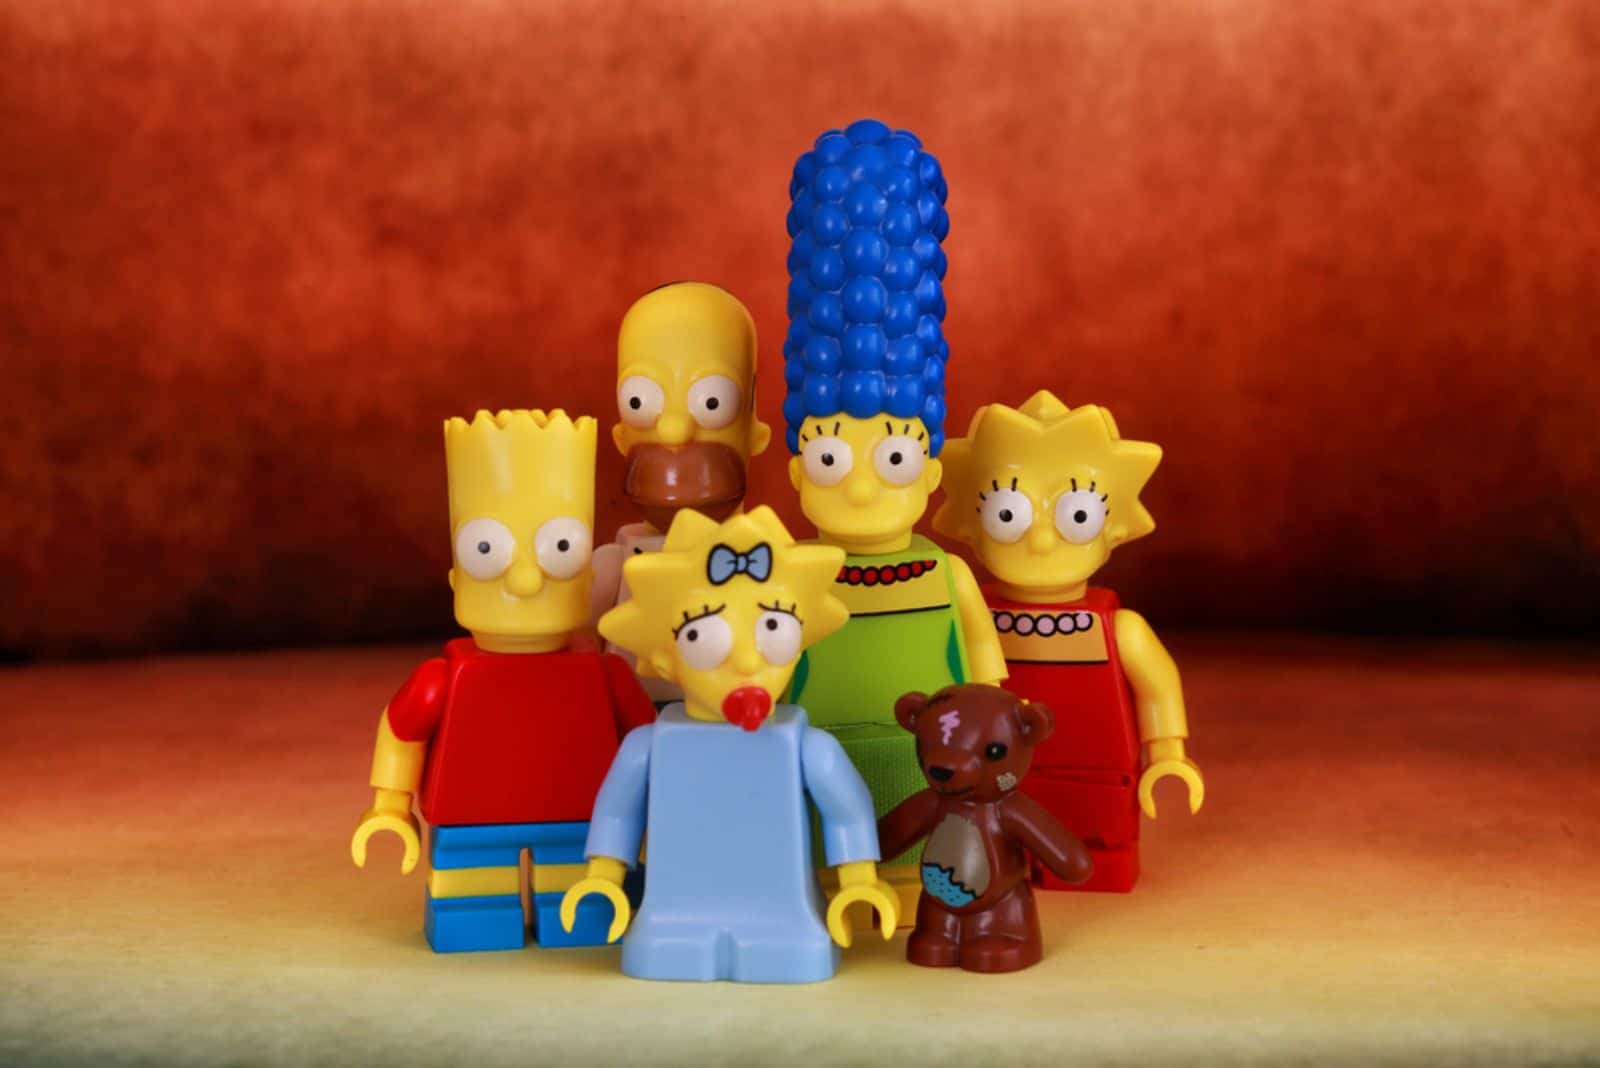 A family Simpson Lego Mini Figure